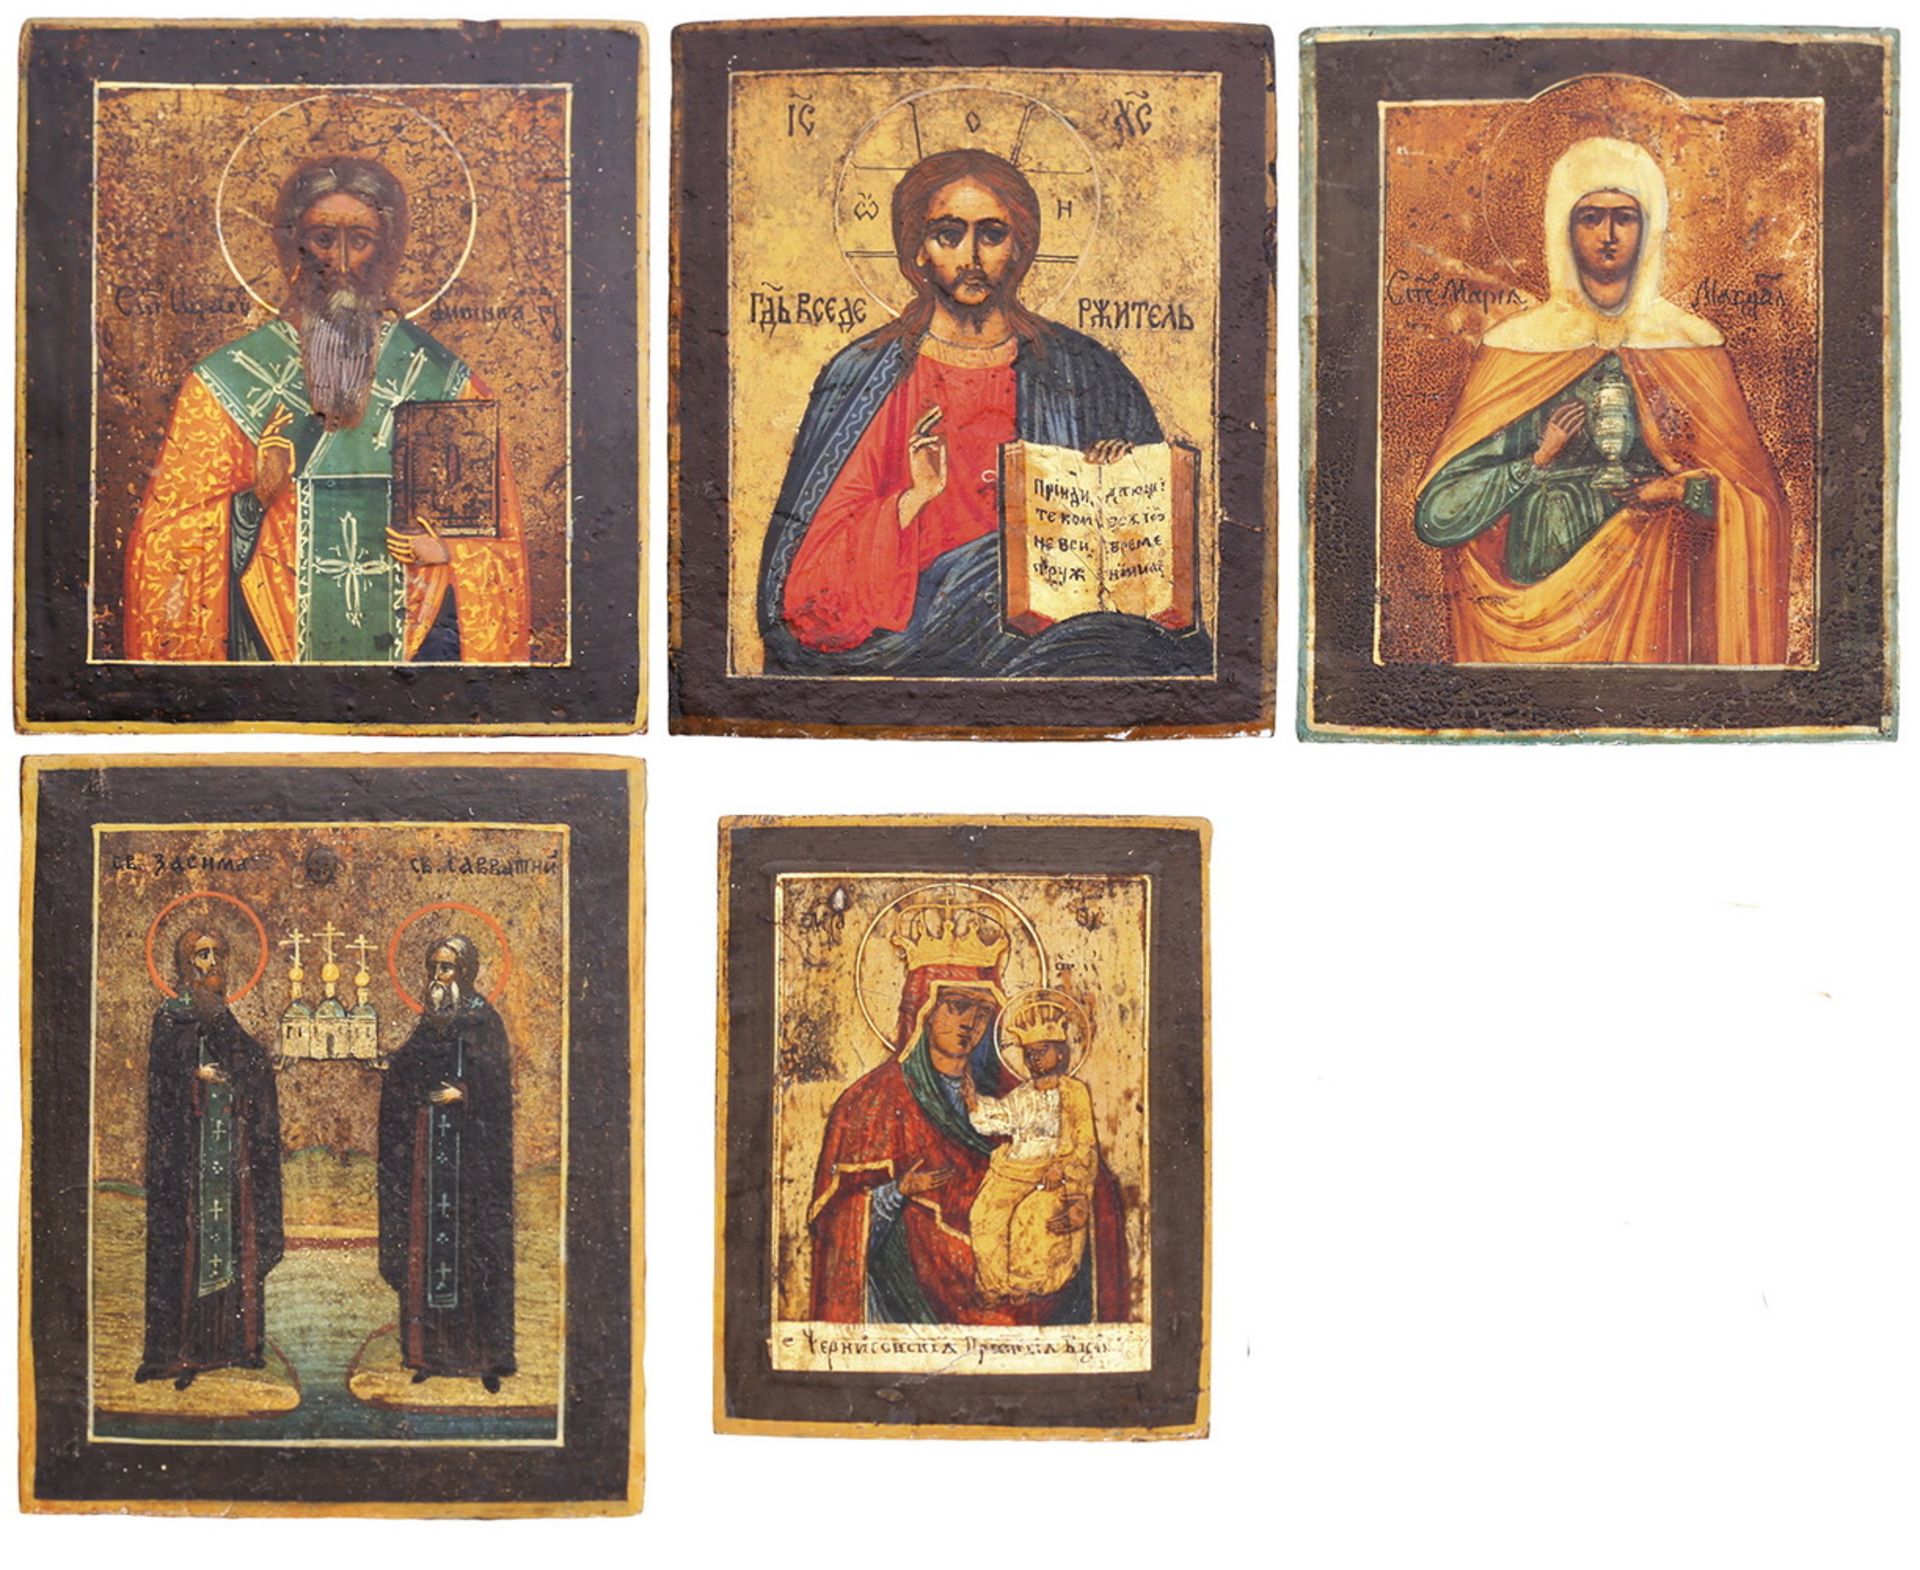 Five icons showing images of the Saint Denis (?), Christ Pantocrator, Saint Maria Magdalena, Saints 